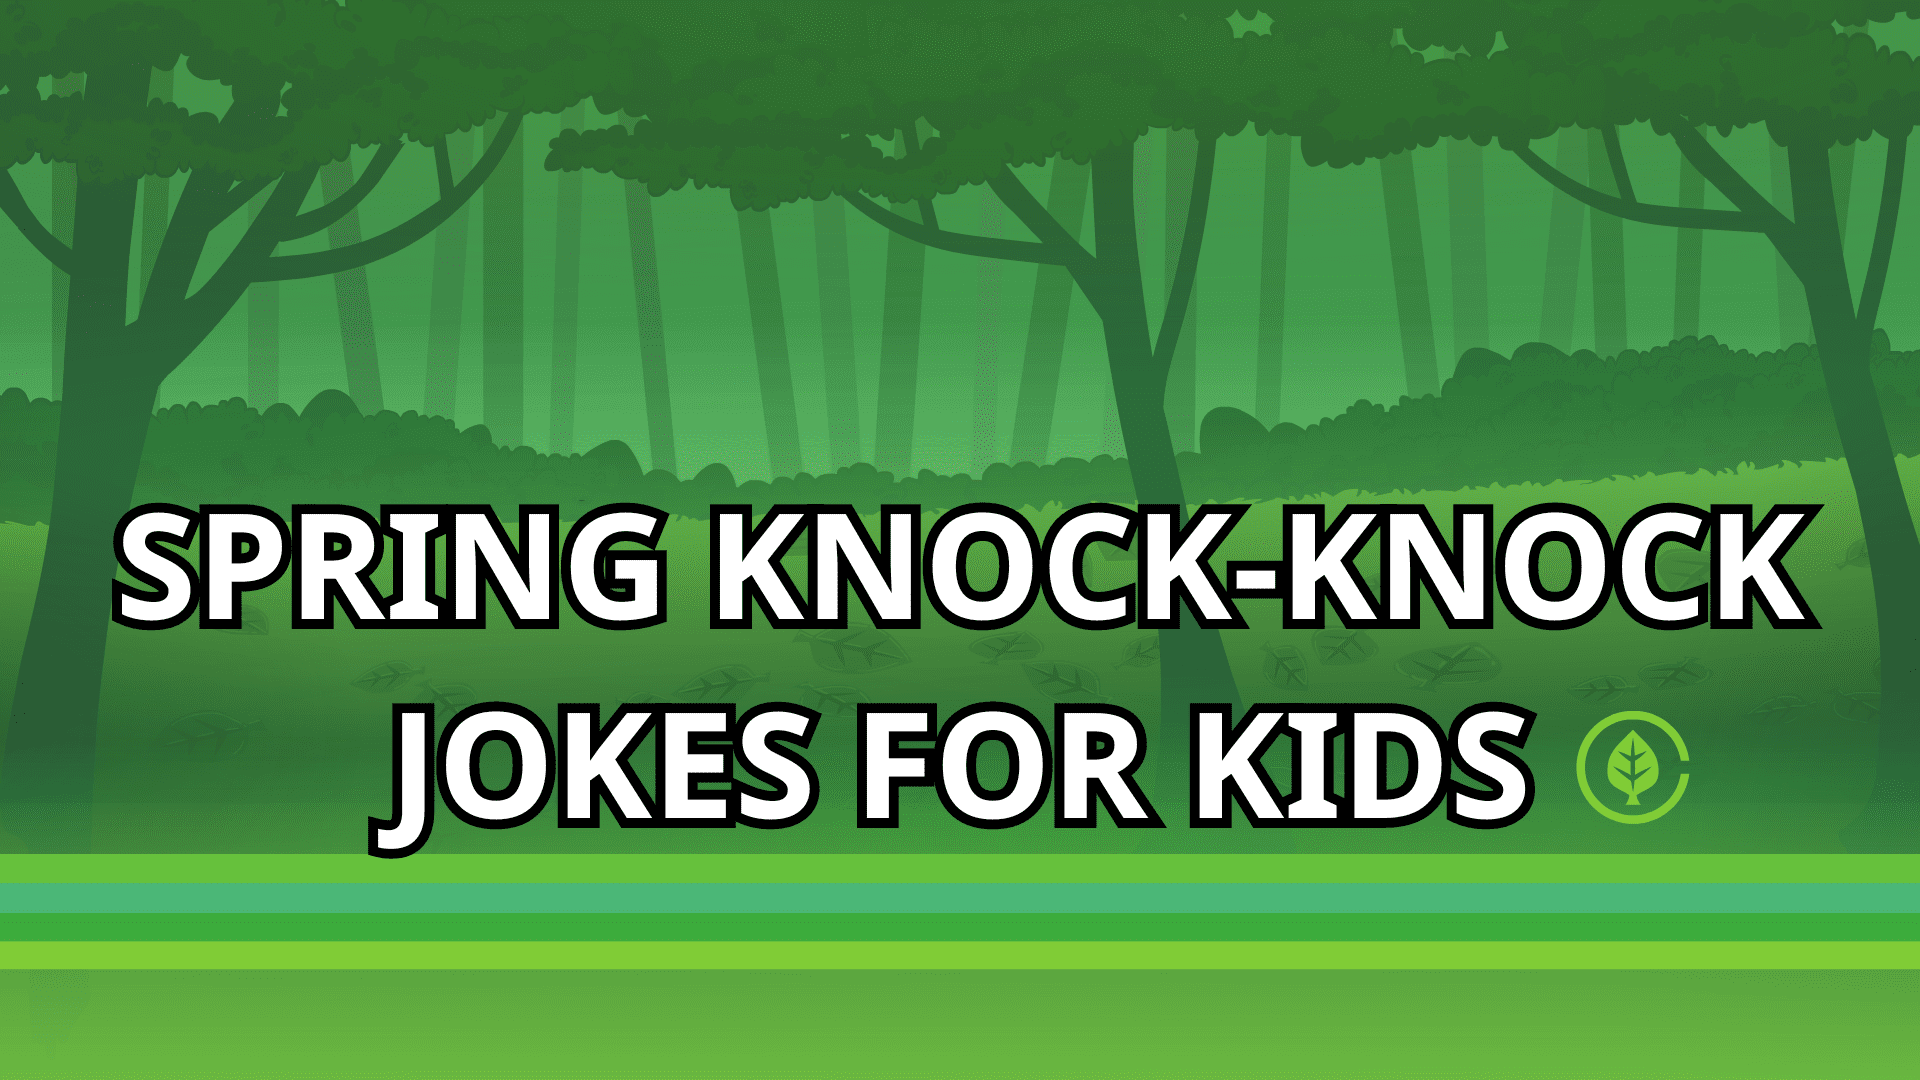 7 Spring Knock-Knock Jokes For Kids